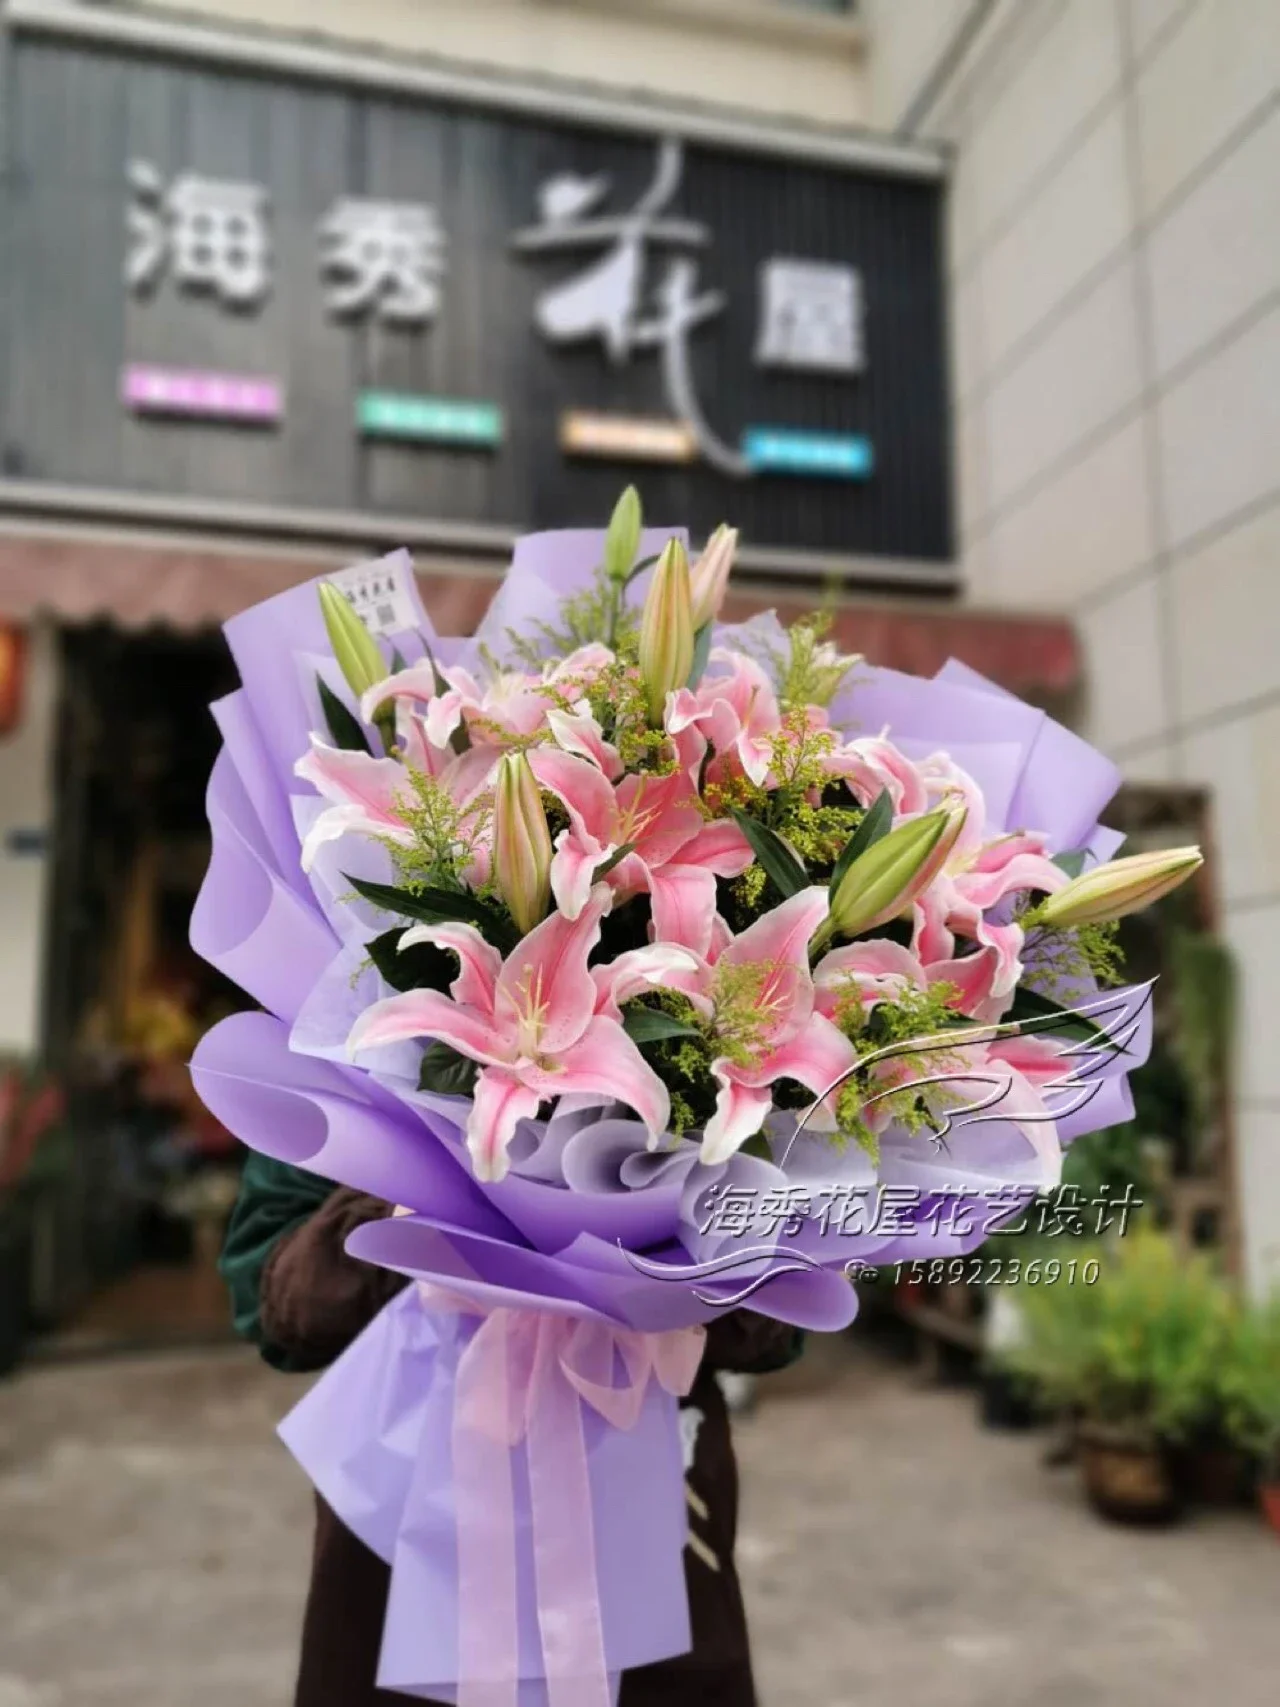 韩式手打百合花束 精美花束 高档花束 个性花束 最美花束 自然花束 生曰花束